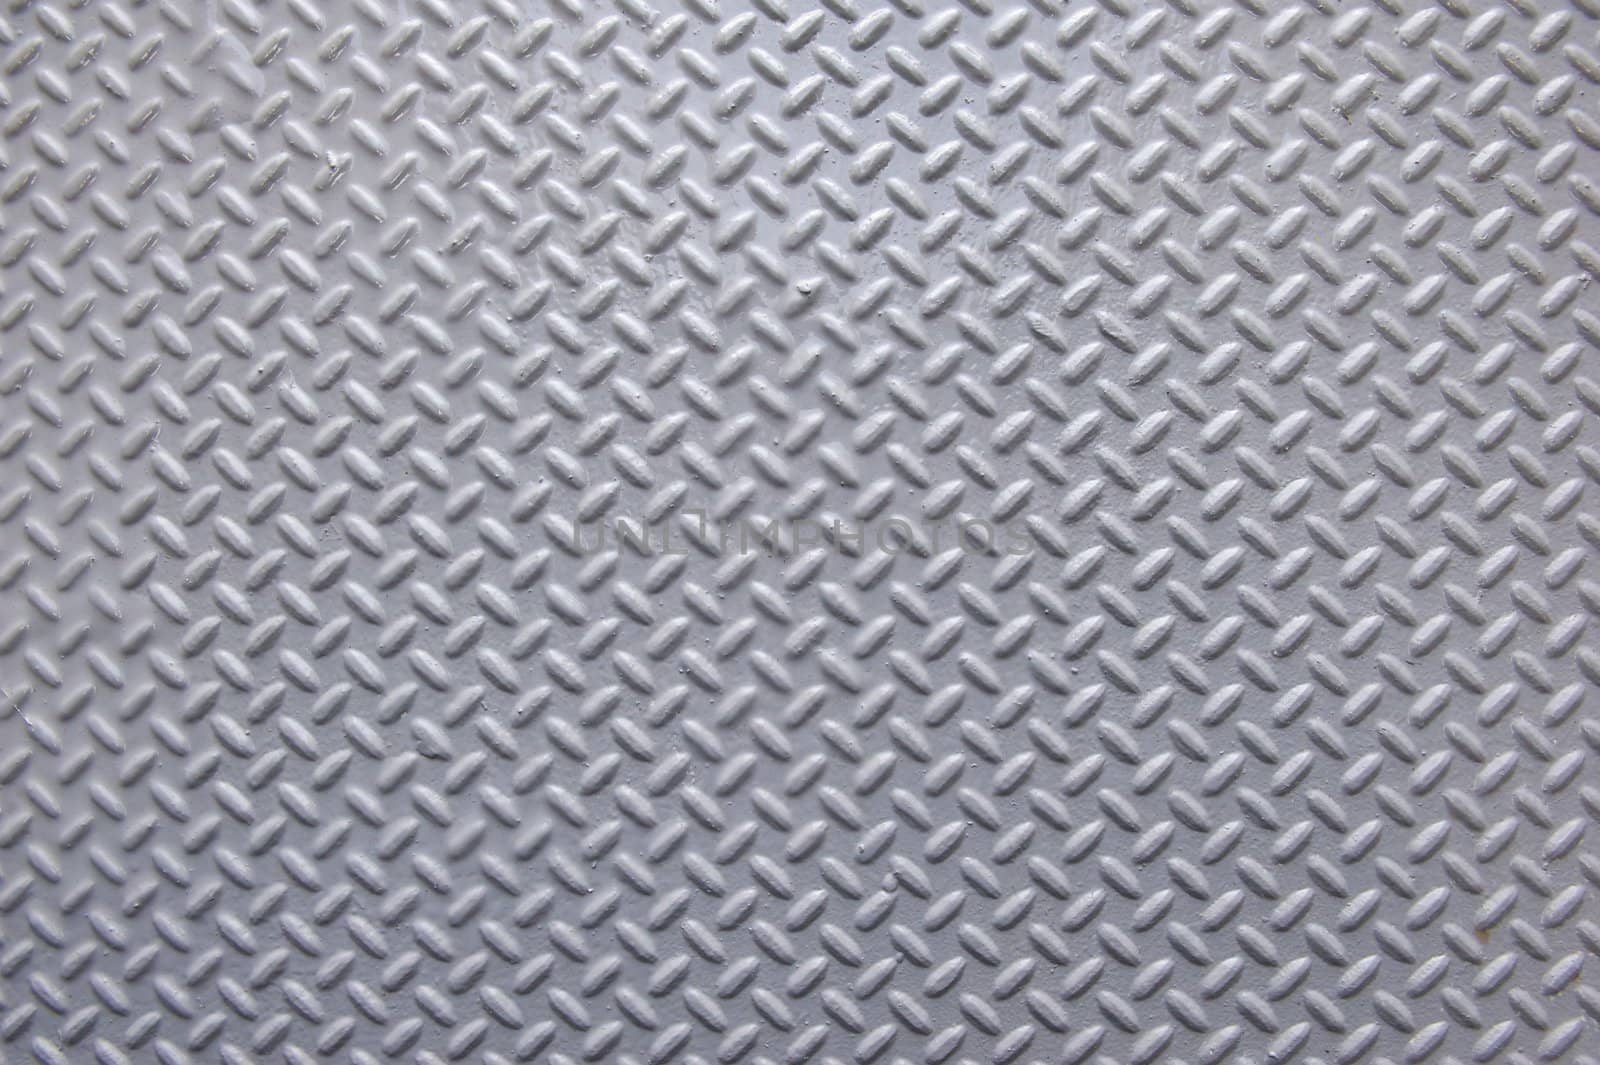 Background of painted metal with raised herringbone pattern